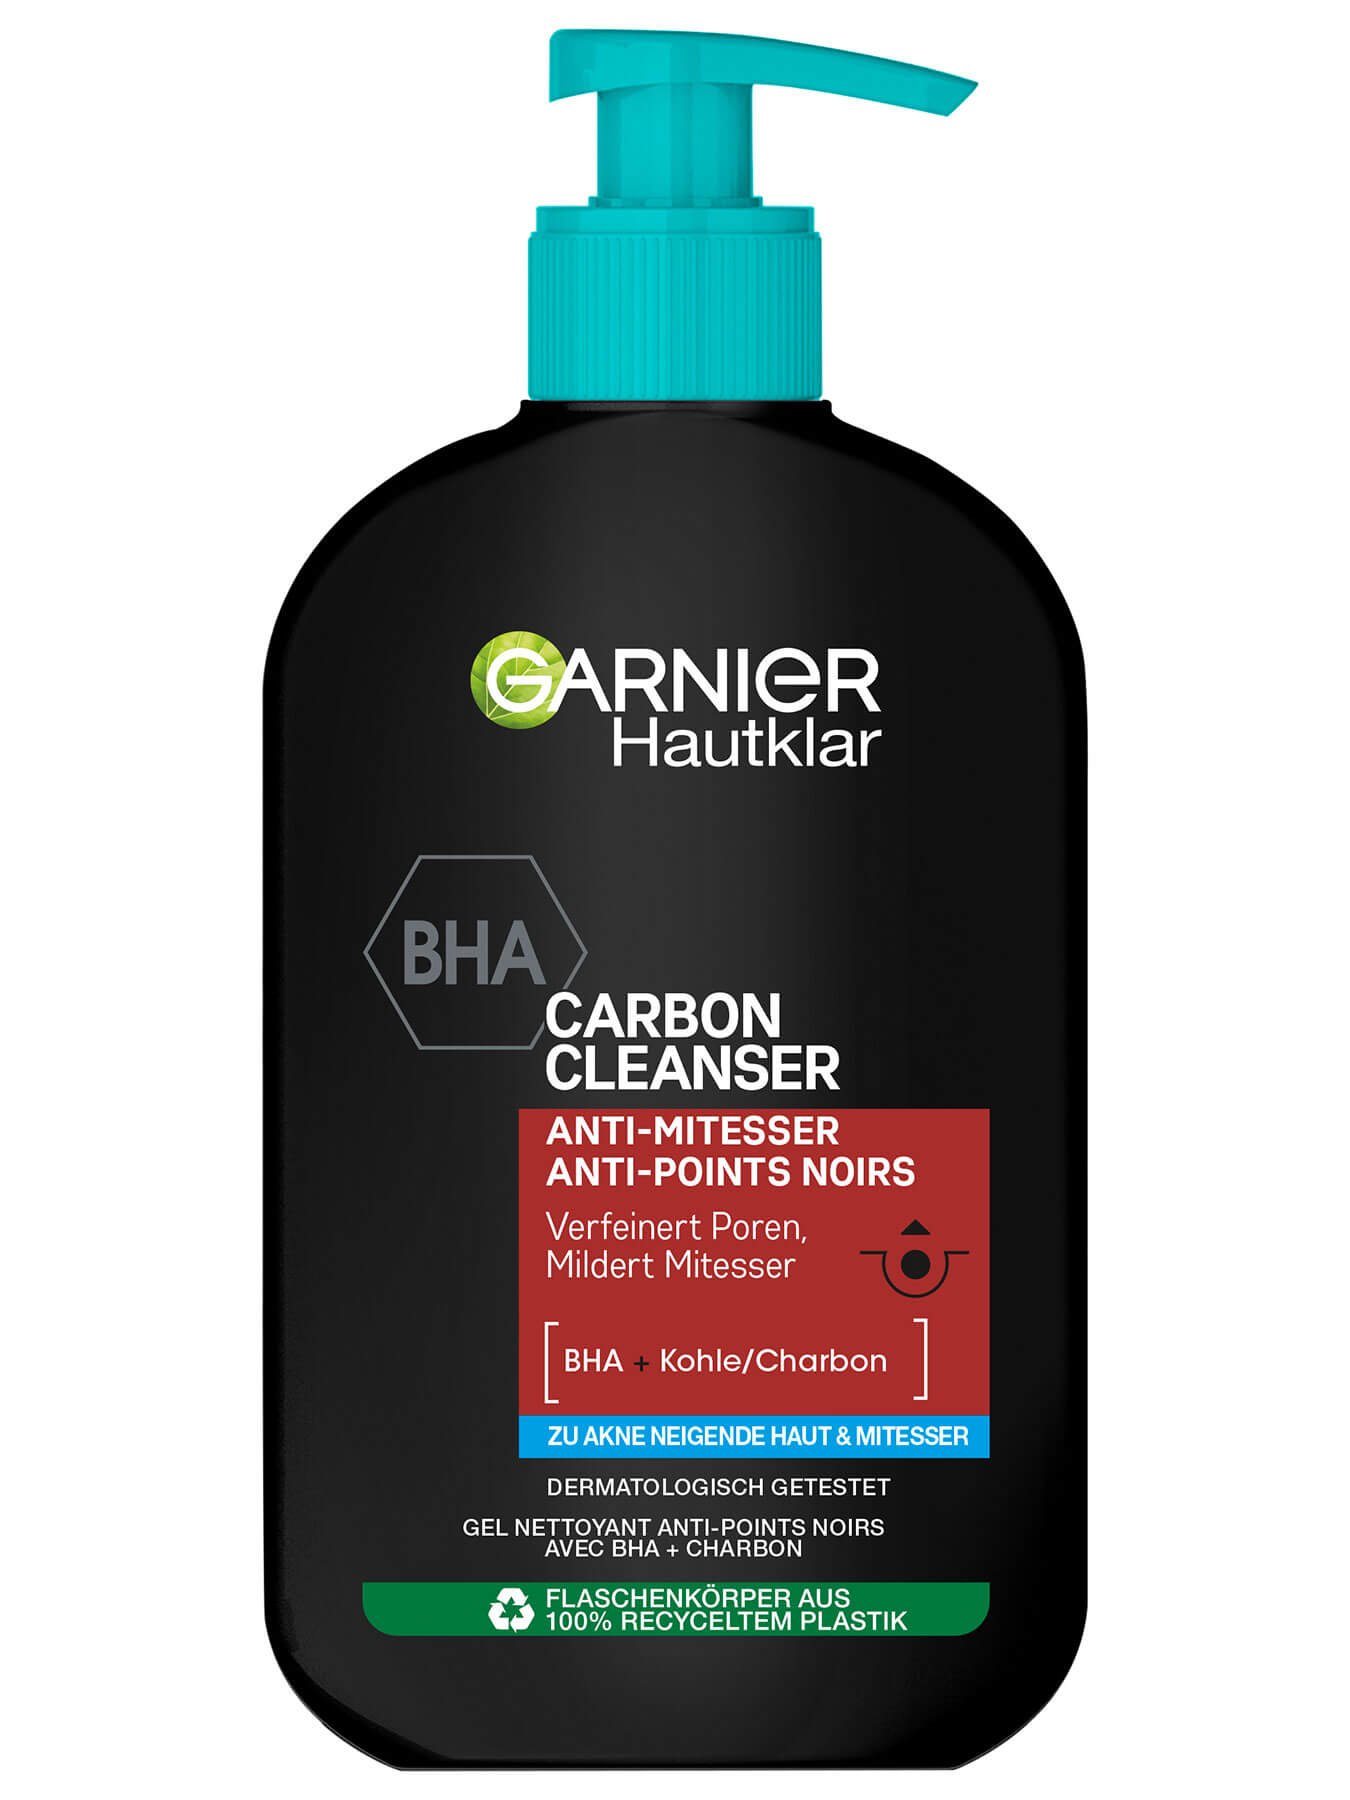 Hautklar Waschgel BHA Carbon Cleanser Anti-Mitesser | Garnier